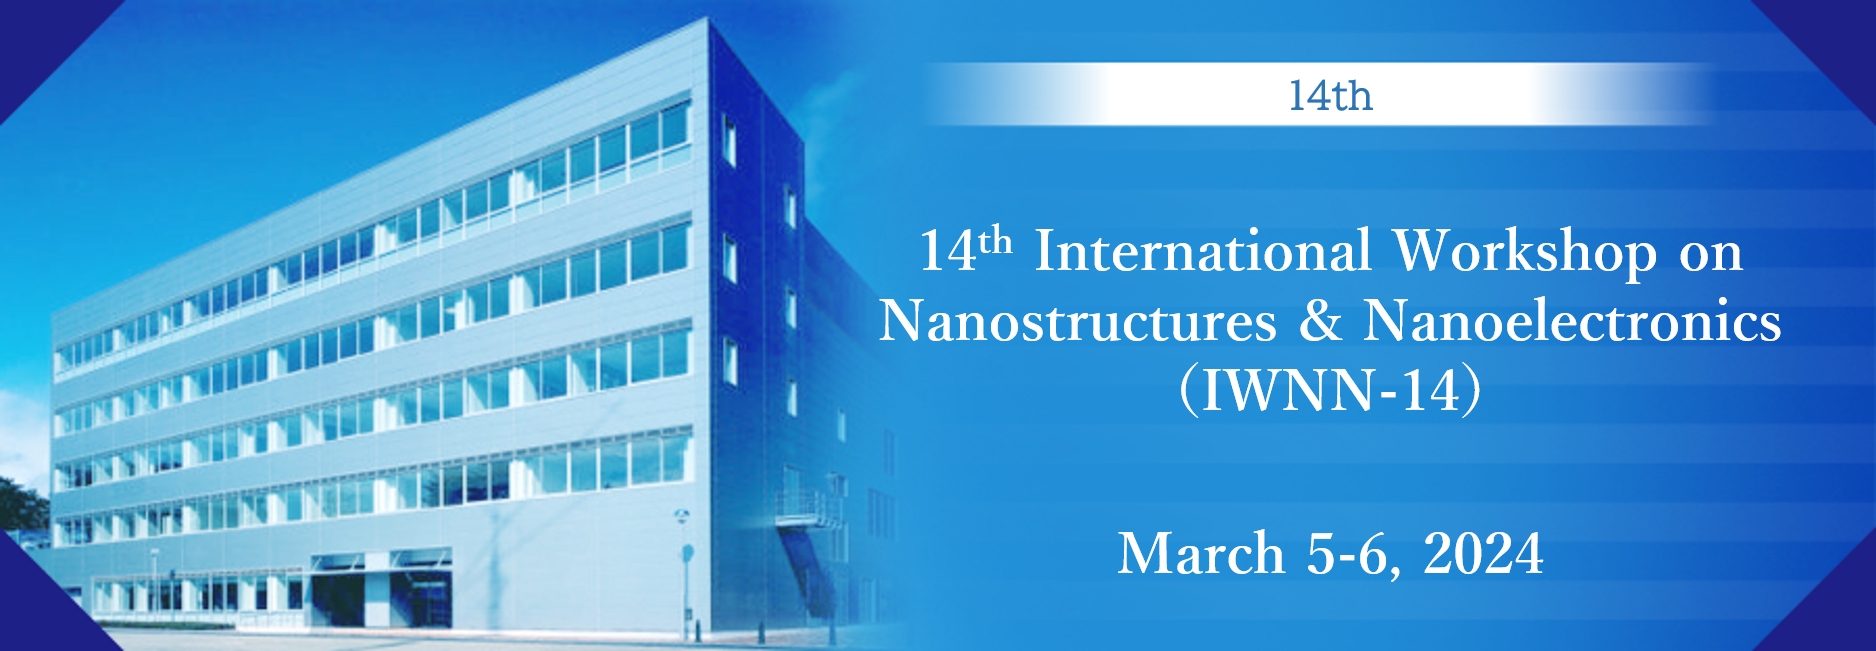 ナノ構造とナノエレクトロニクスに関する国際ワークショップ